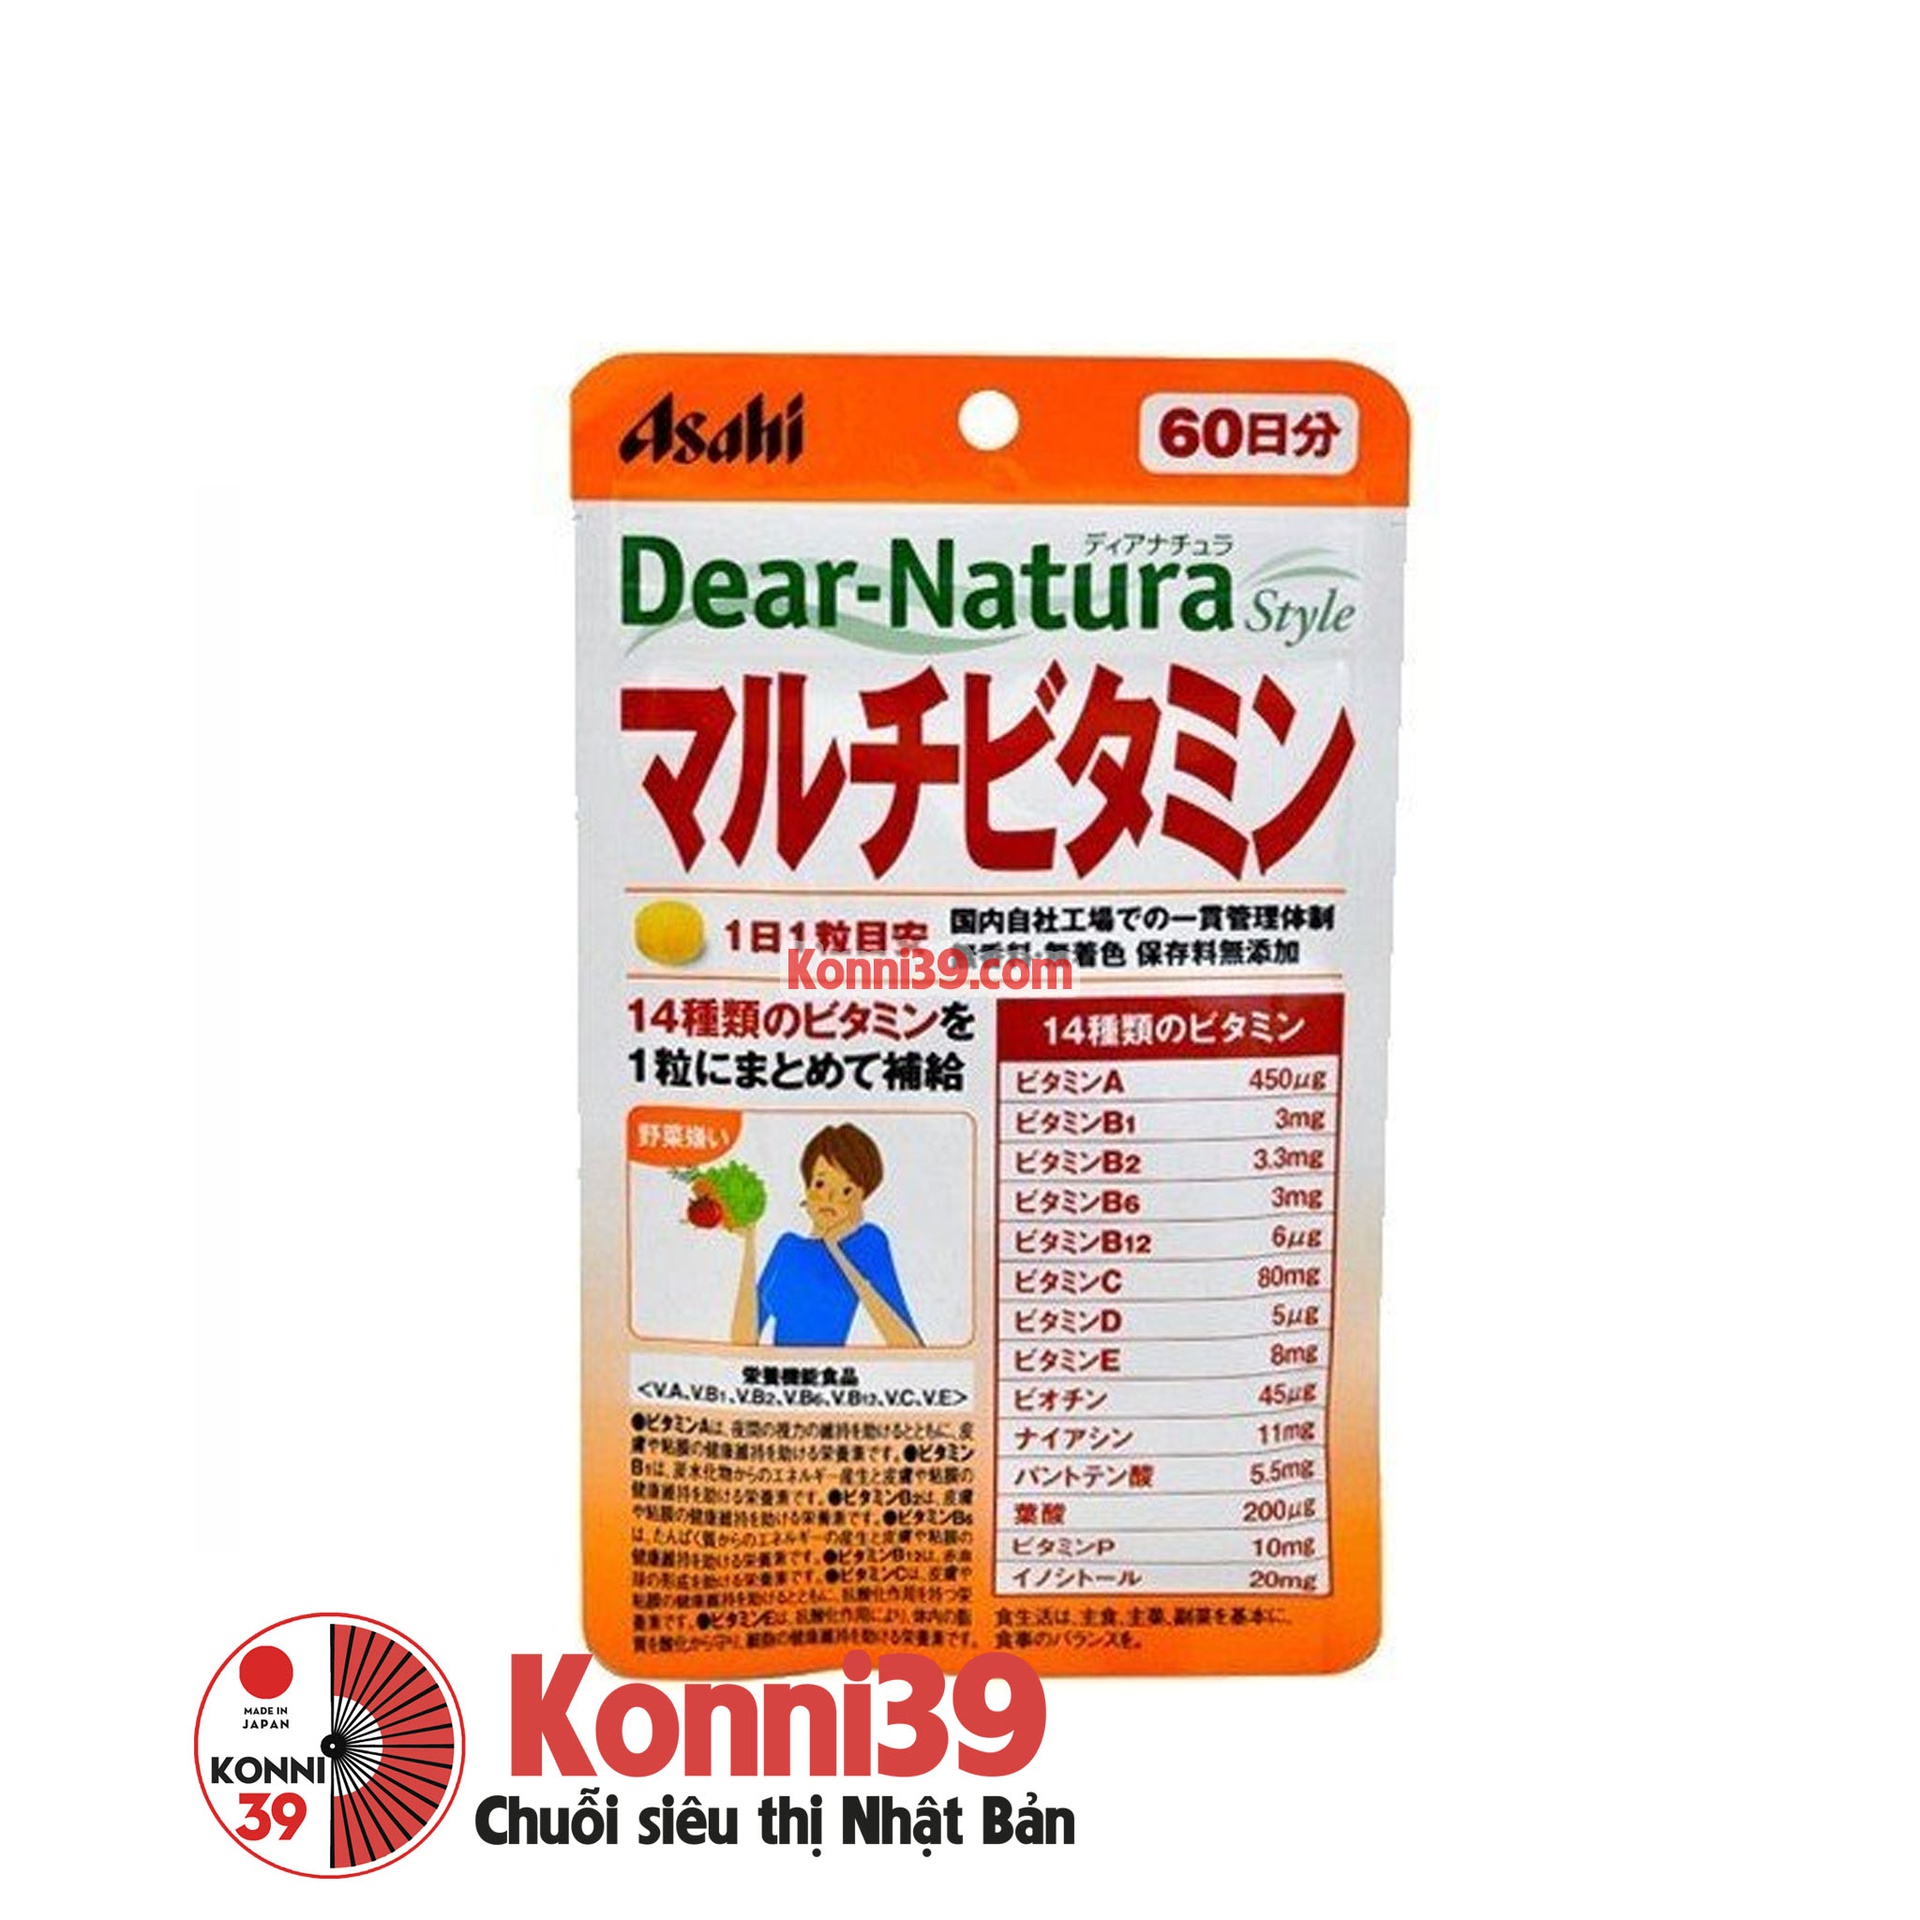 Viên uống Asahi Dear-Natura bổ sung Vitamin tổng hợp 60 ngày gói 60 viên